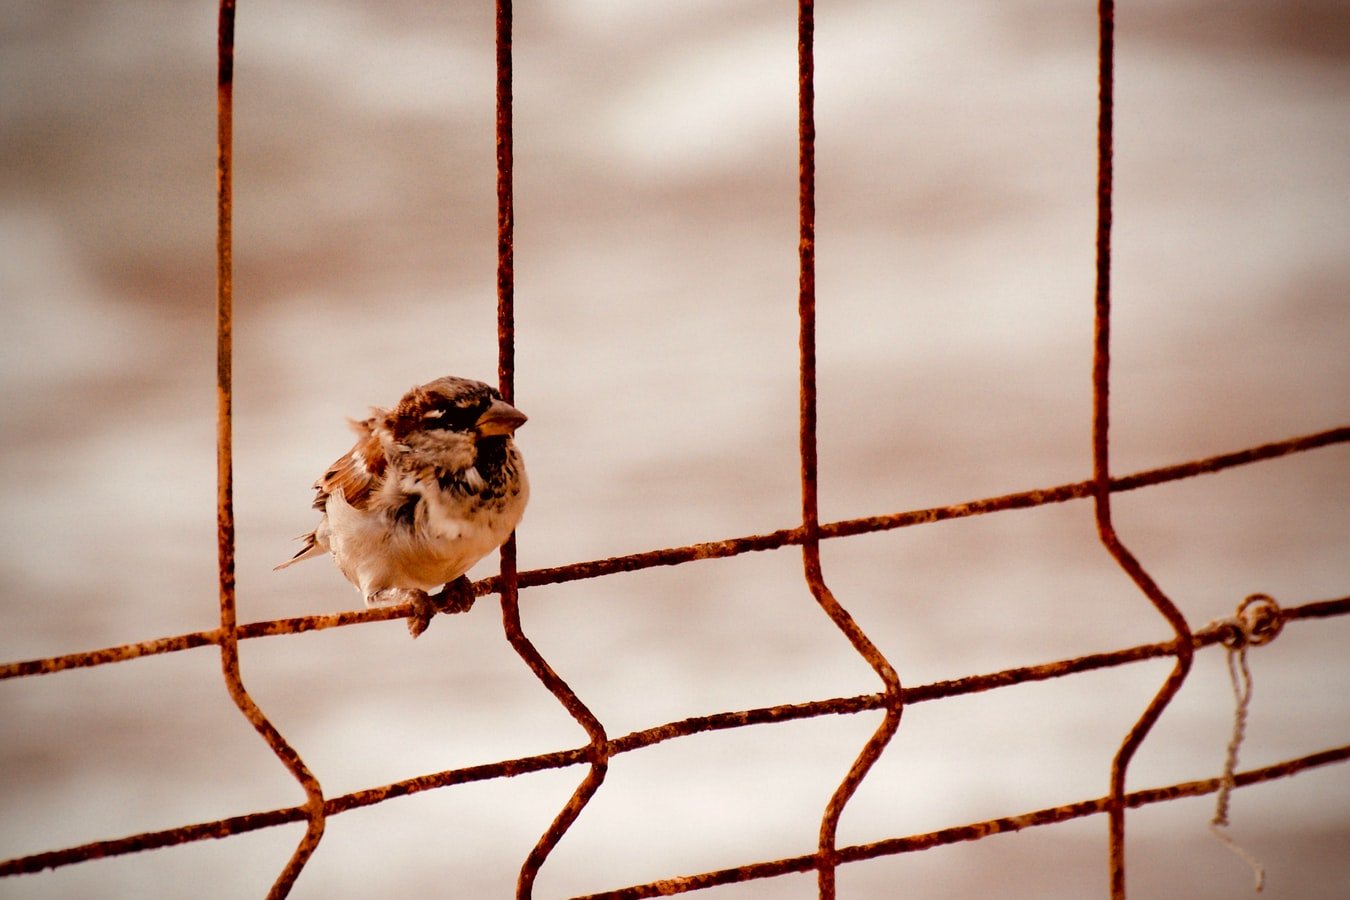 A sparrow perched on metal wires. | Photo: Unsplash/José Fulgencio Orenes Martínez